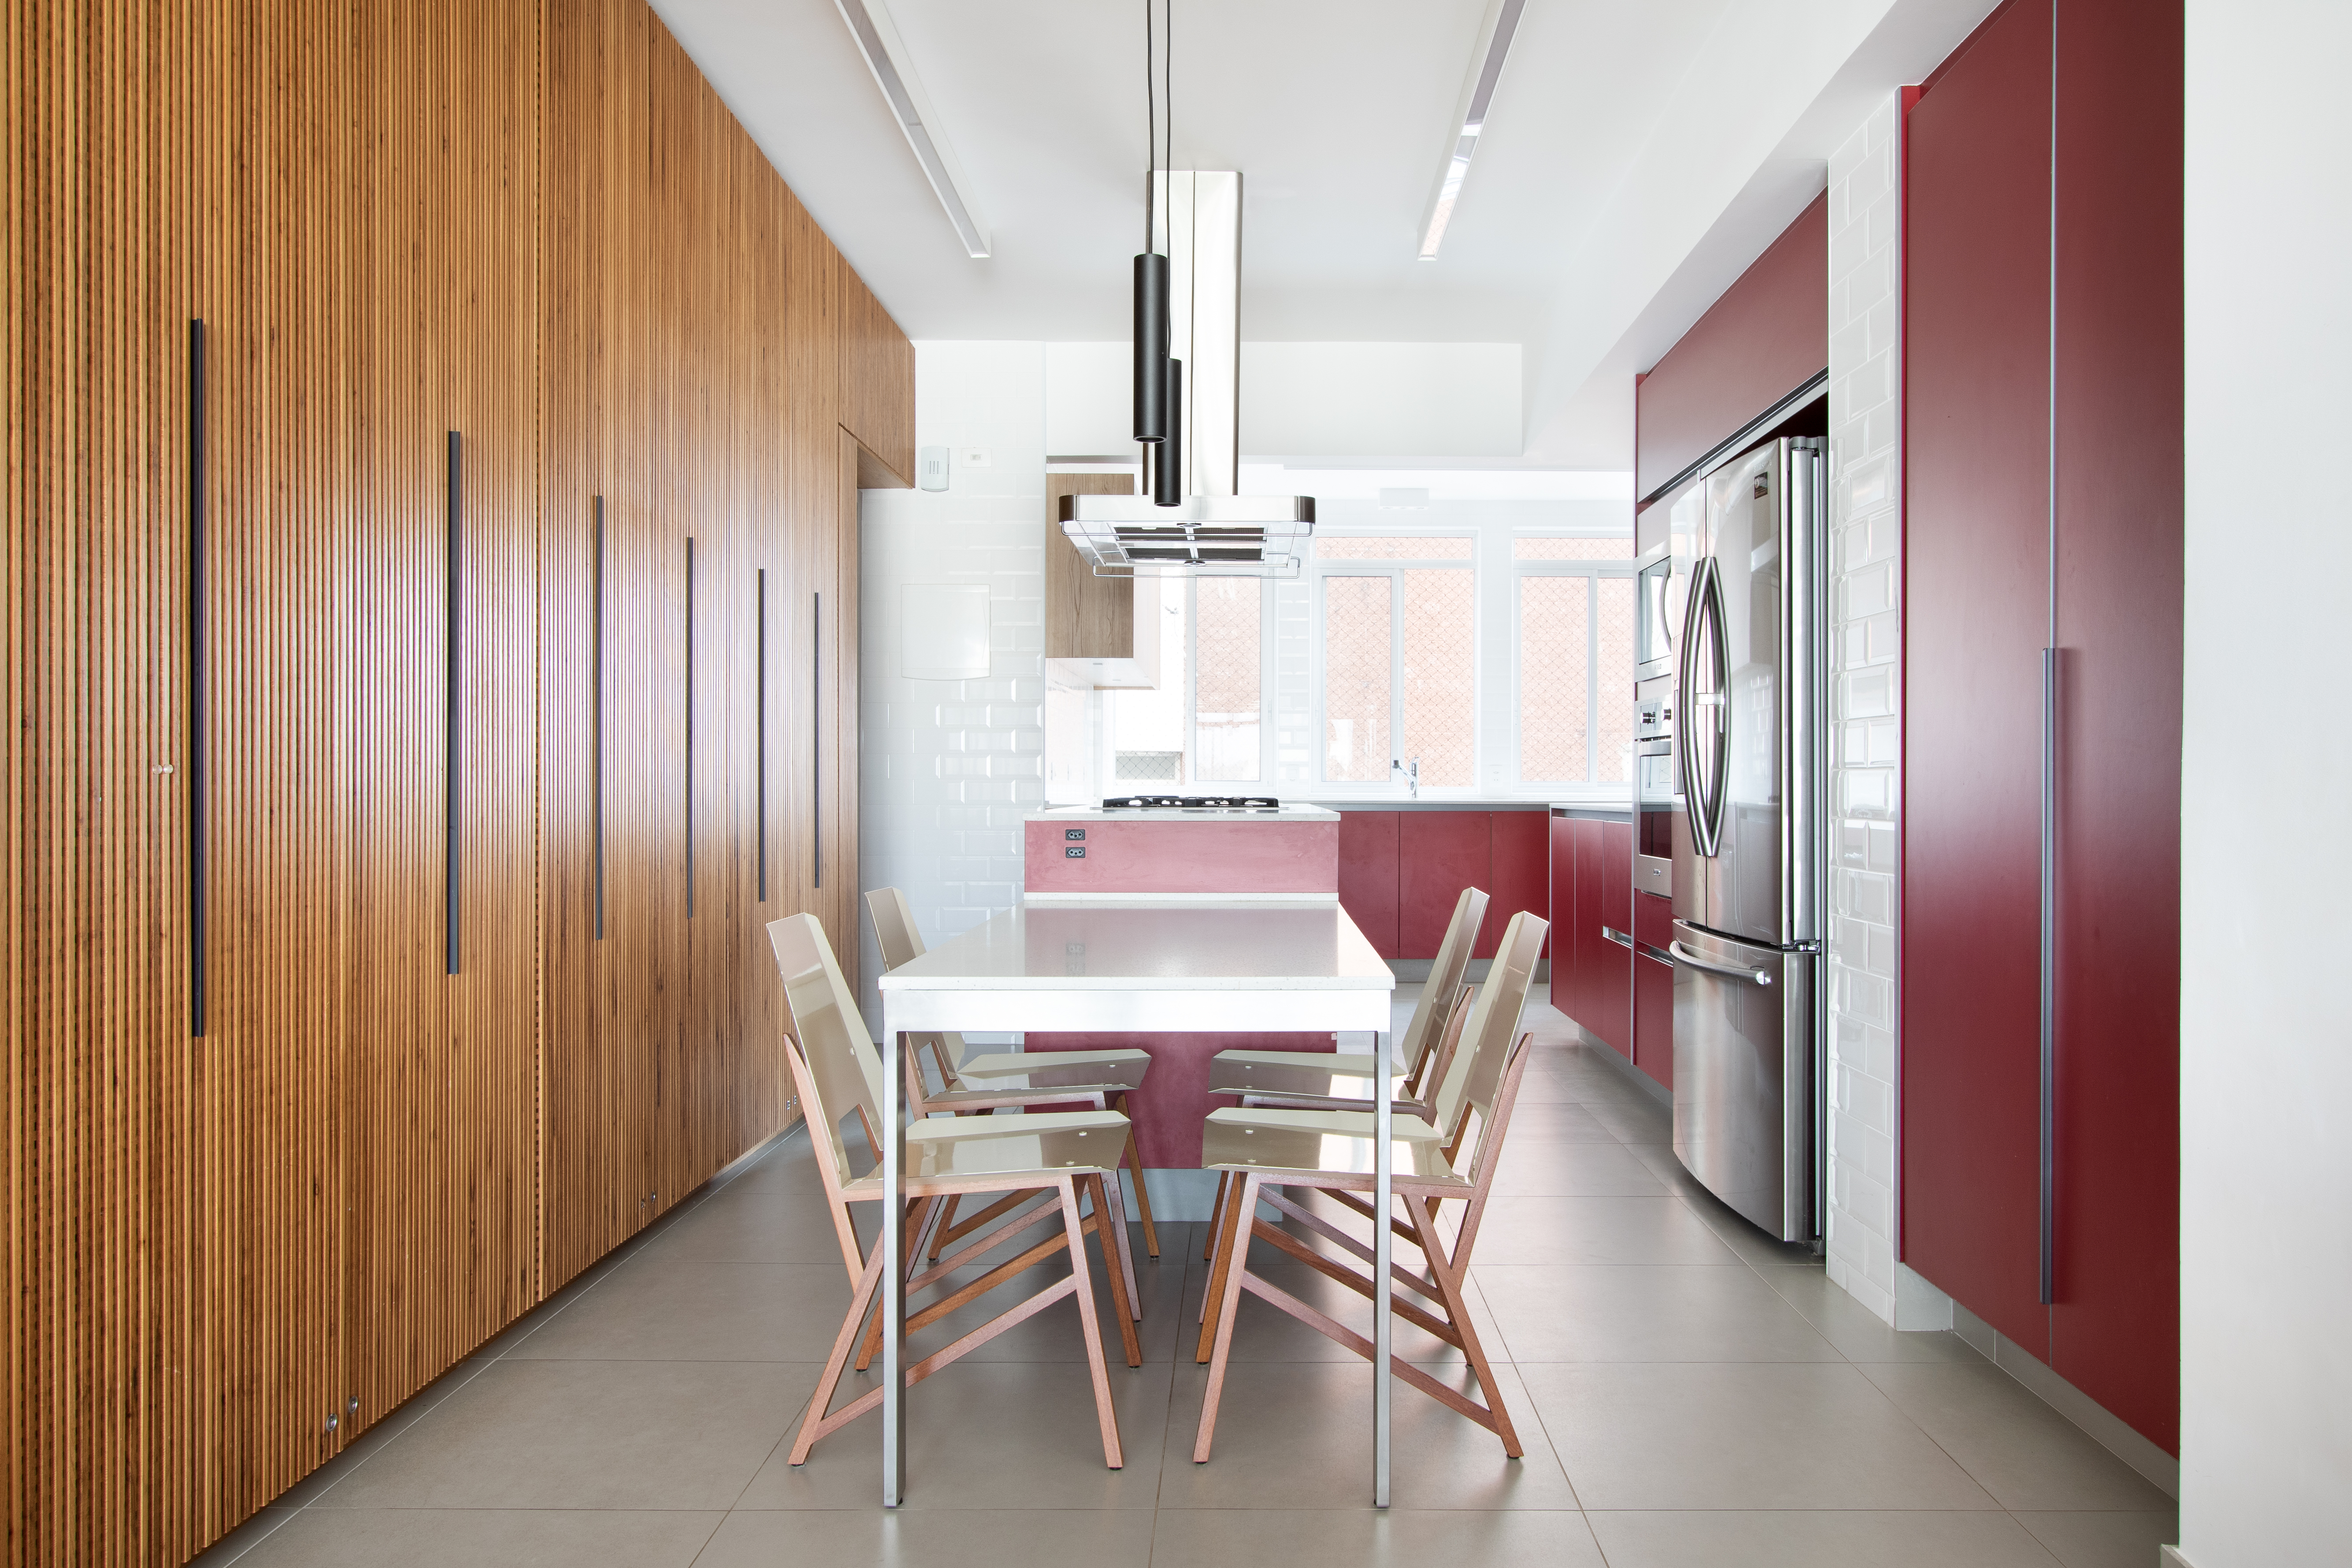  L'appartement de 150 m² dispose d'une cuisine rouge et d'une cave à vin intégrée.